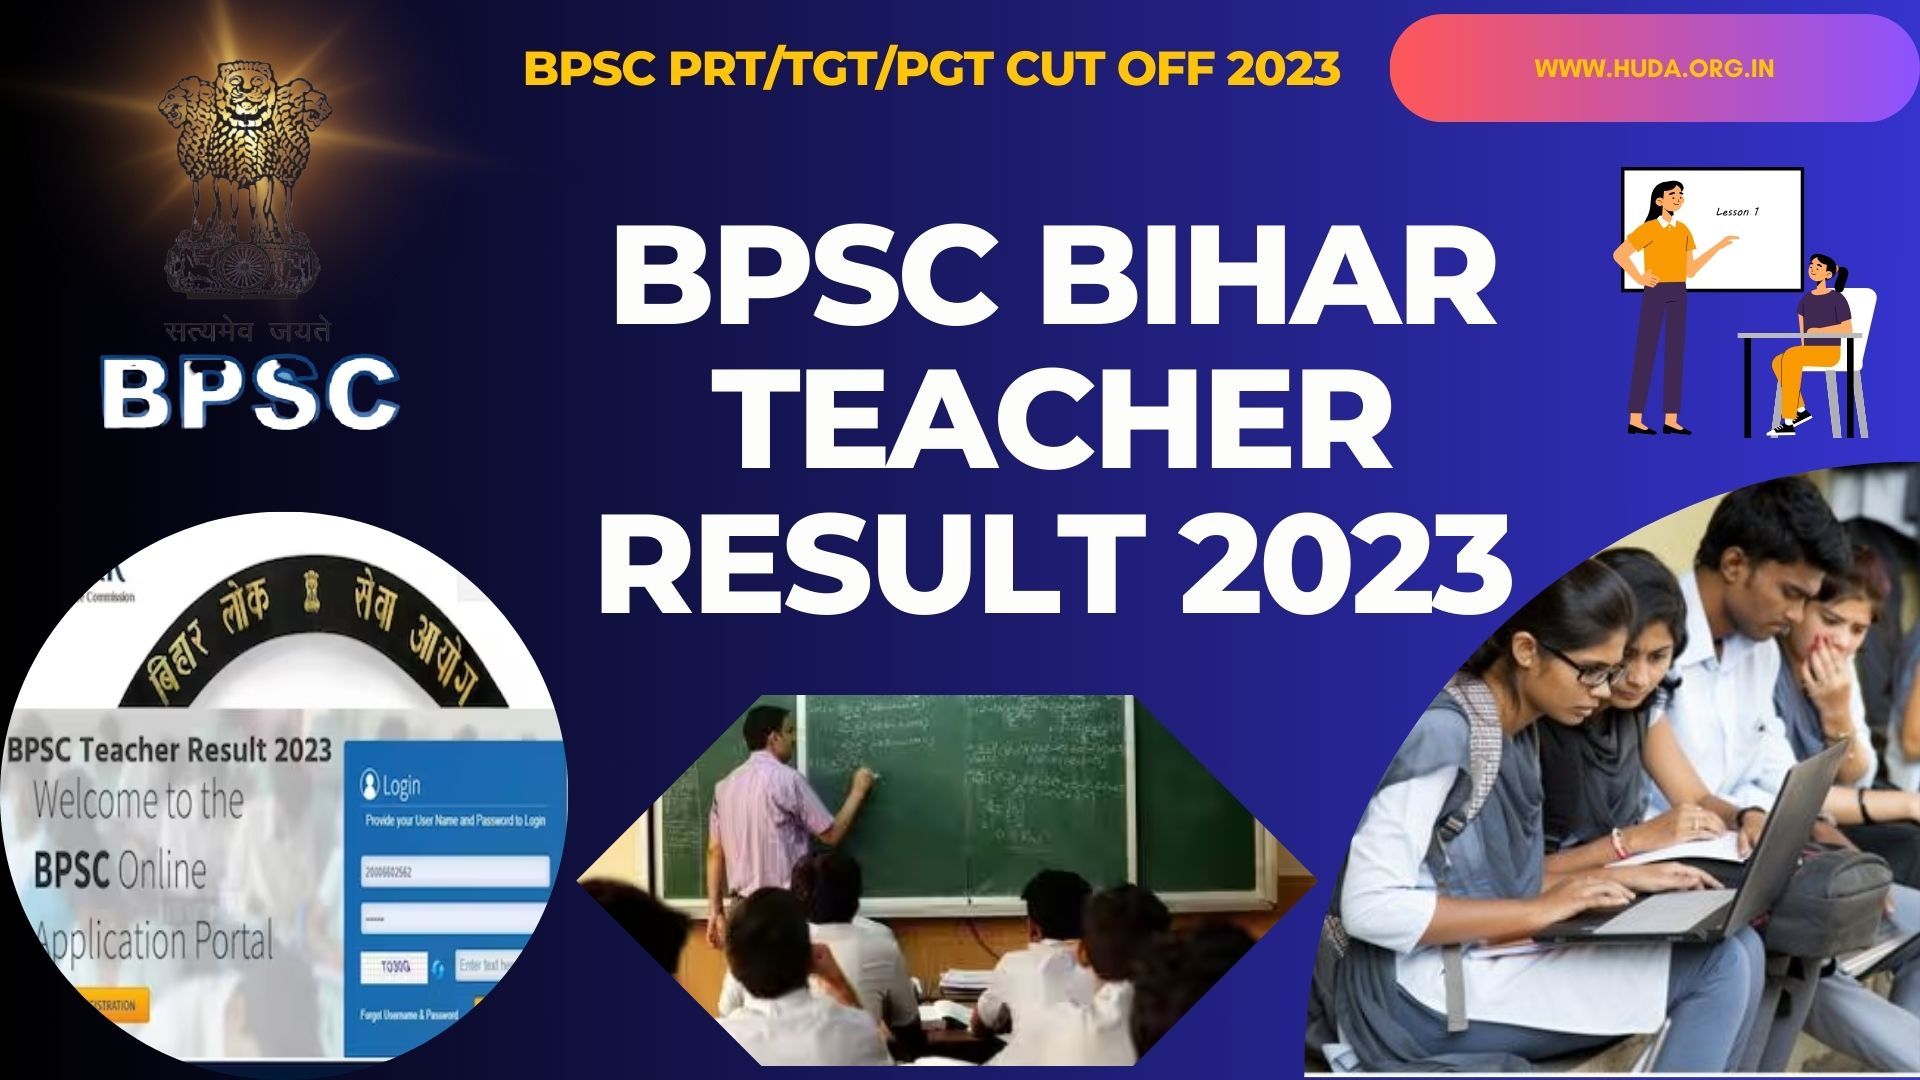 BPSC Bihar Teacher Result 2023 Updates, Cut Off 2023, BPSC TRE Result